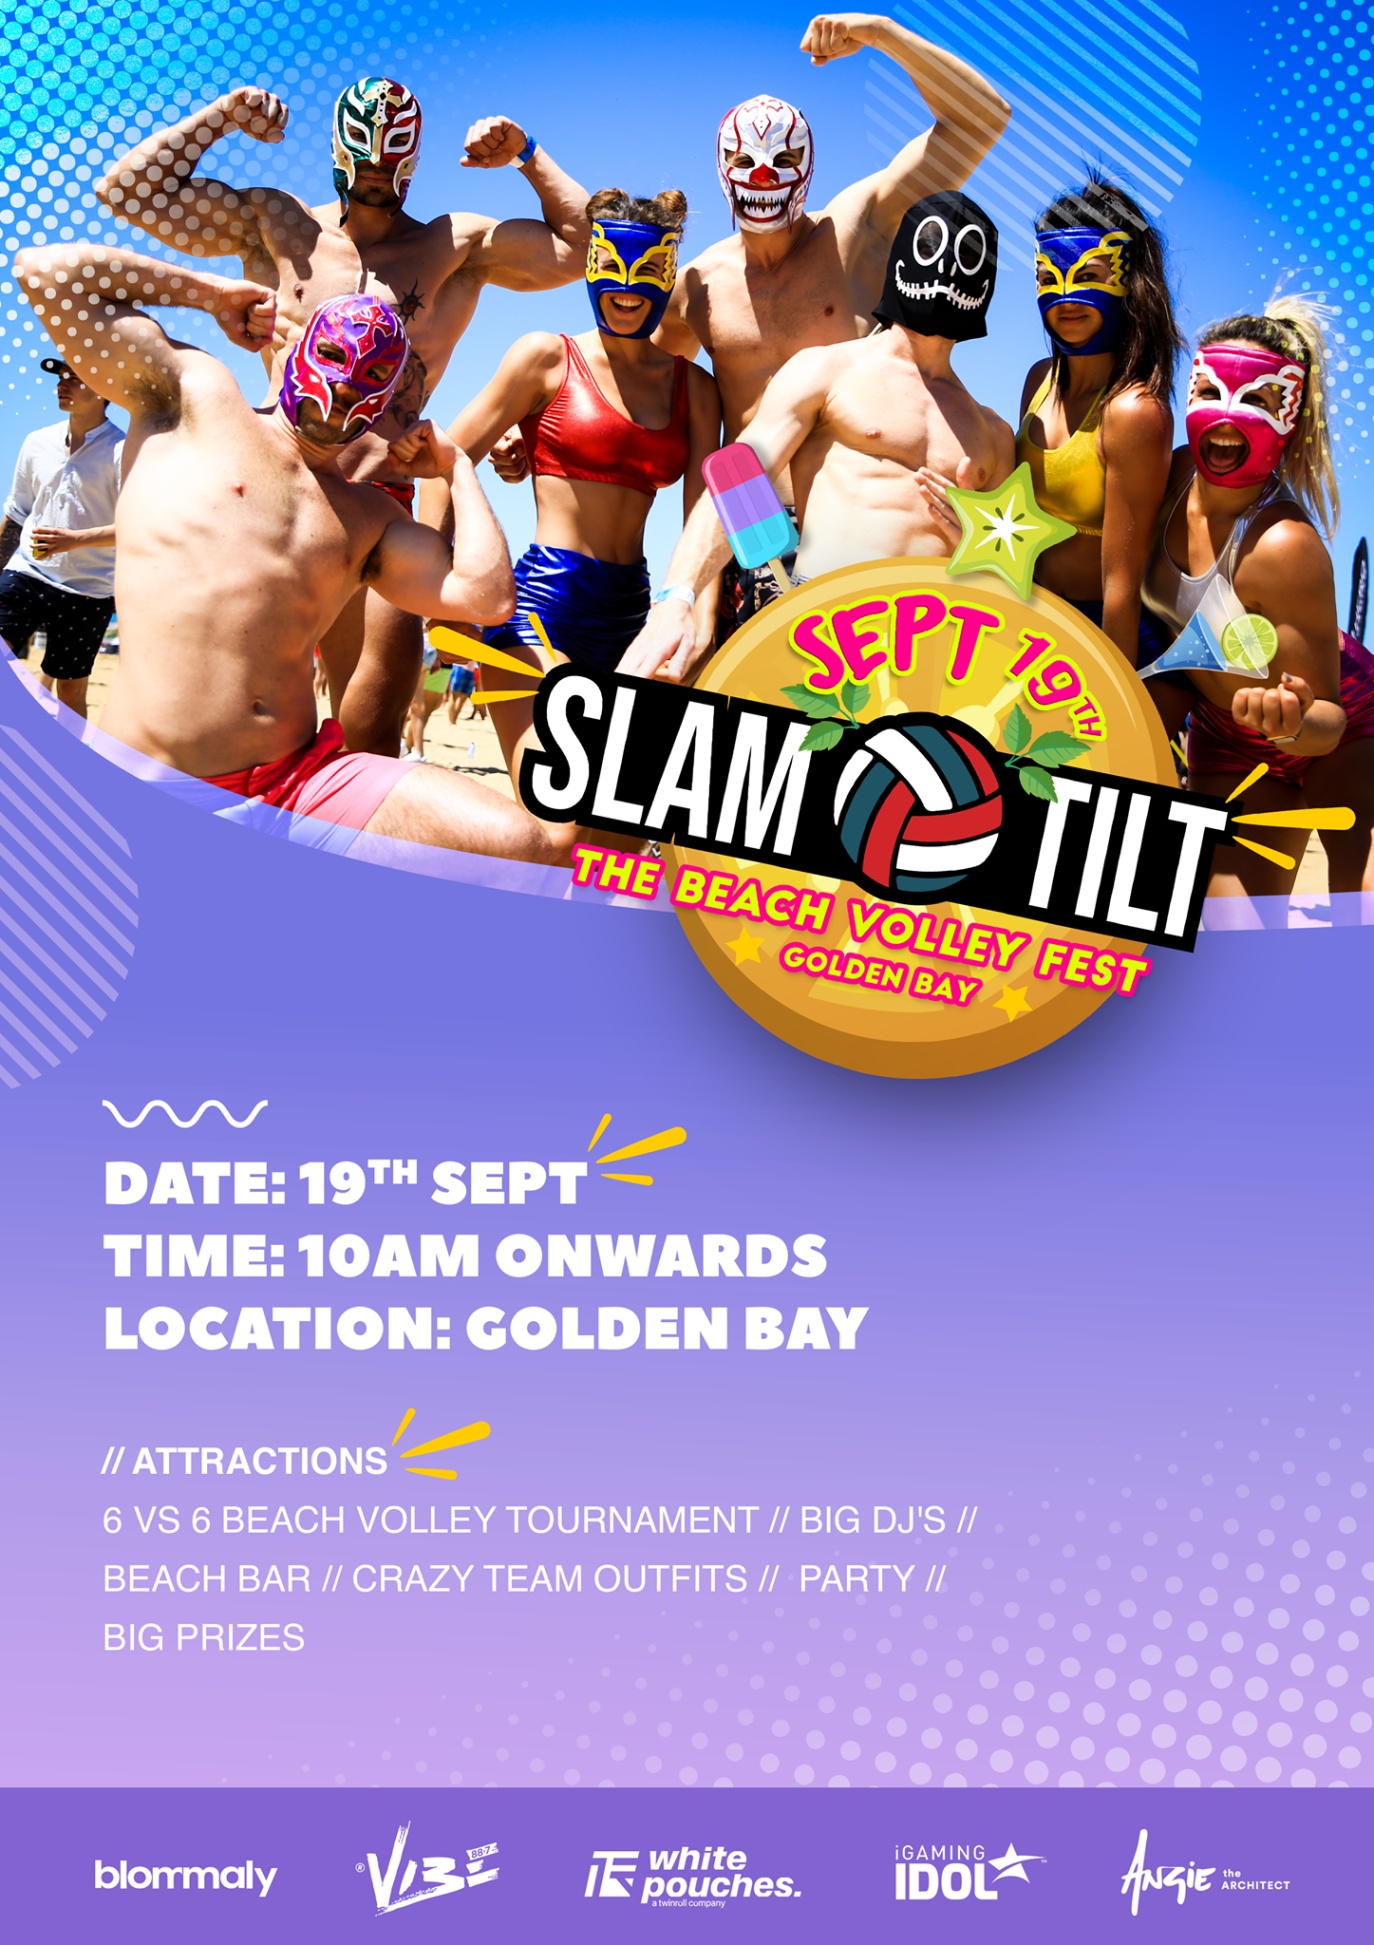 Slam tilt - The Beach Volley Fest poster